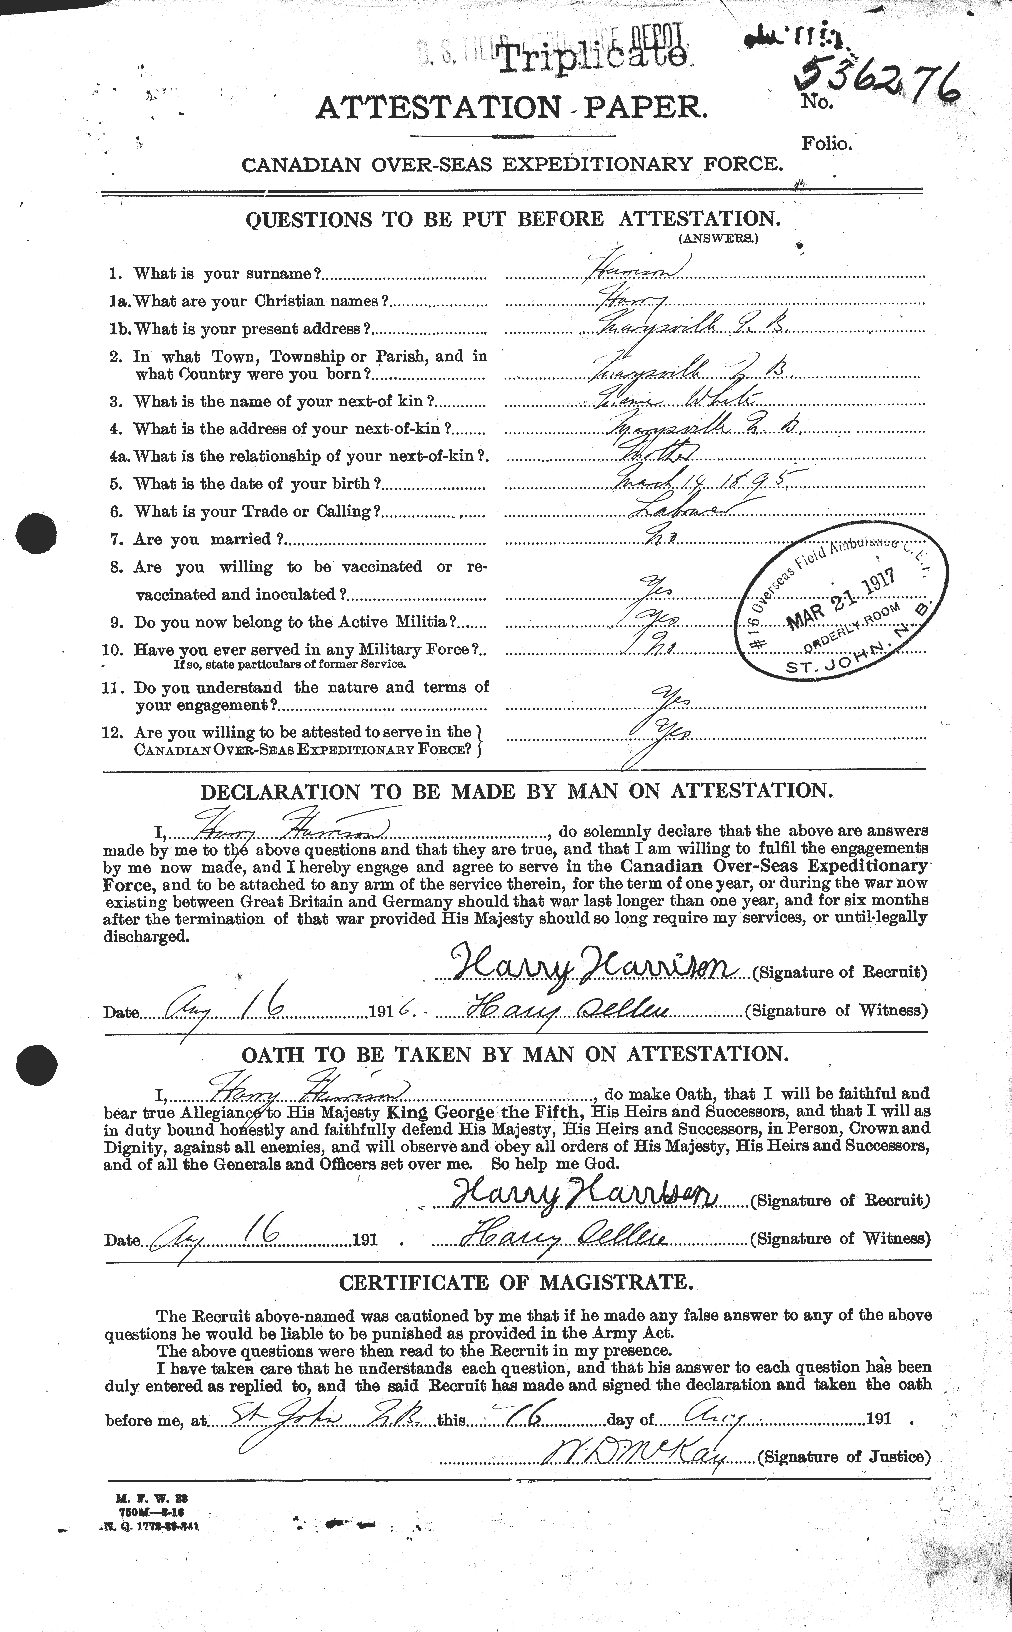 Dossiers du Personnel de la Première Guerre mondiale - CEC 380496a